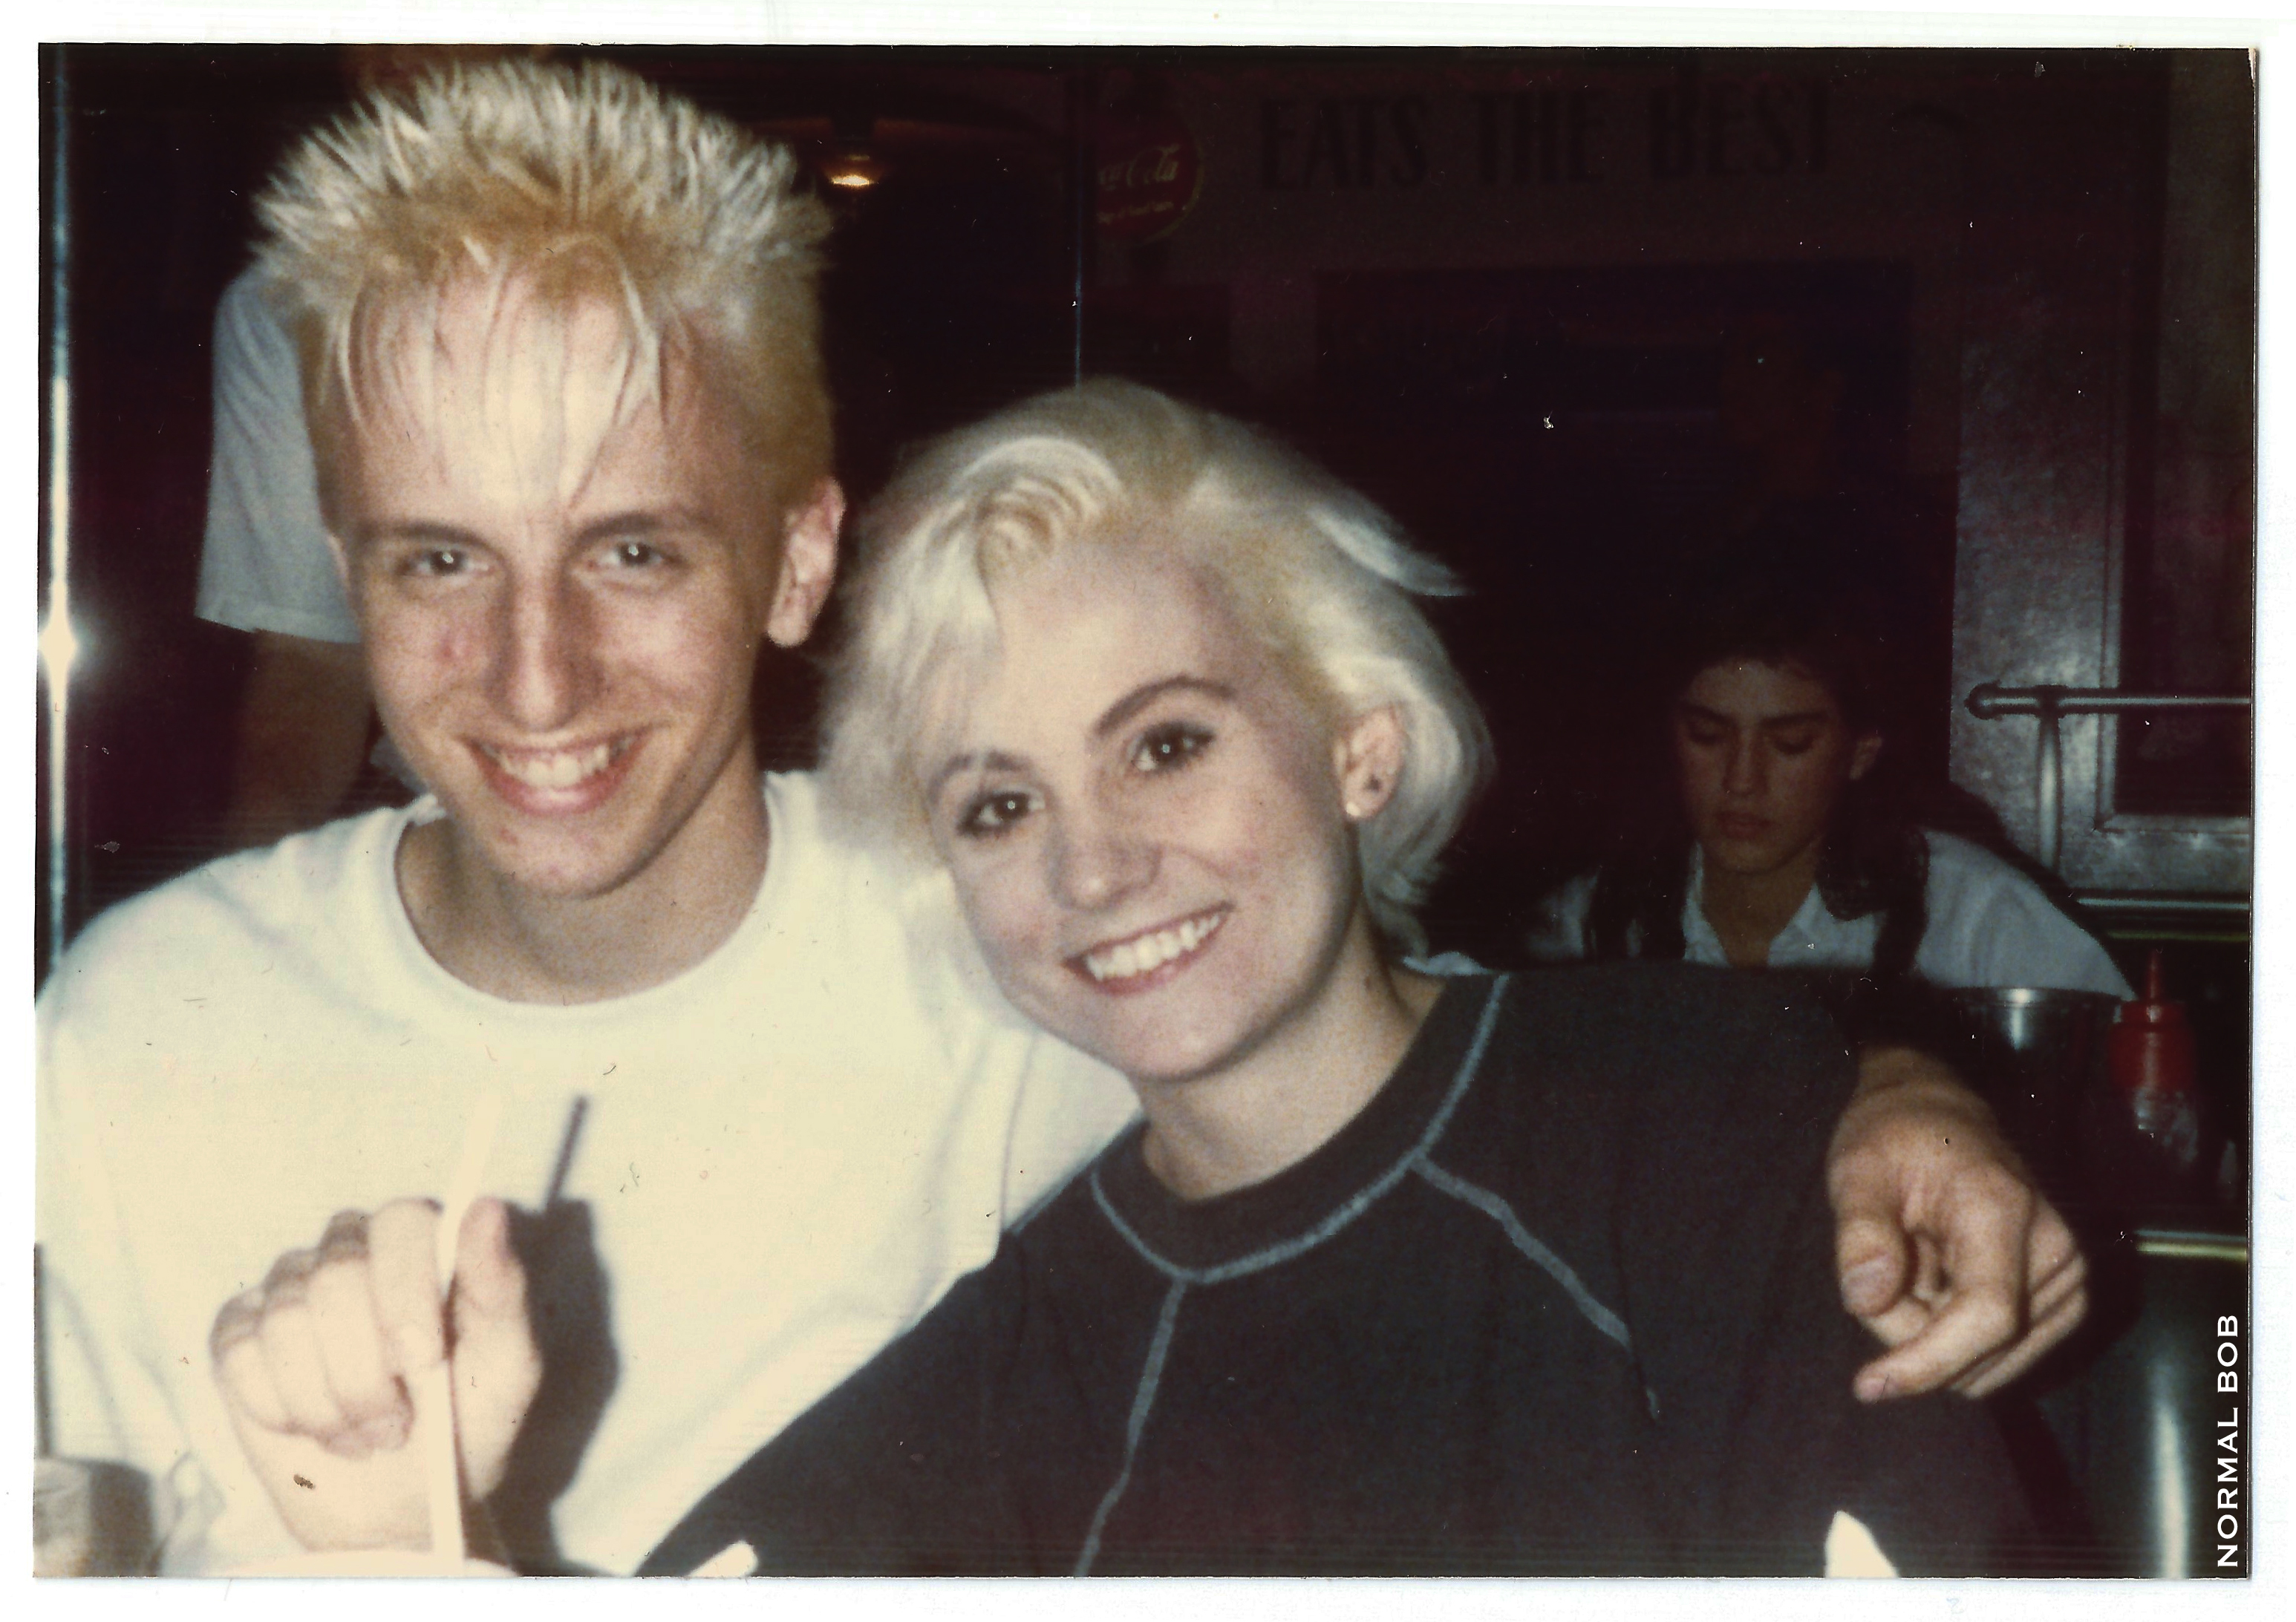 Bob & Erika 1988 birthday at Ed Debevic's Hollywood